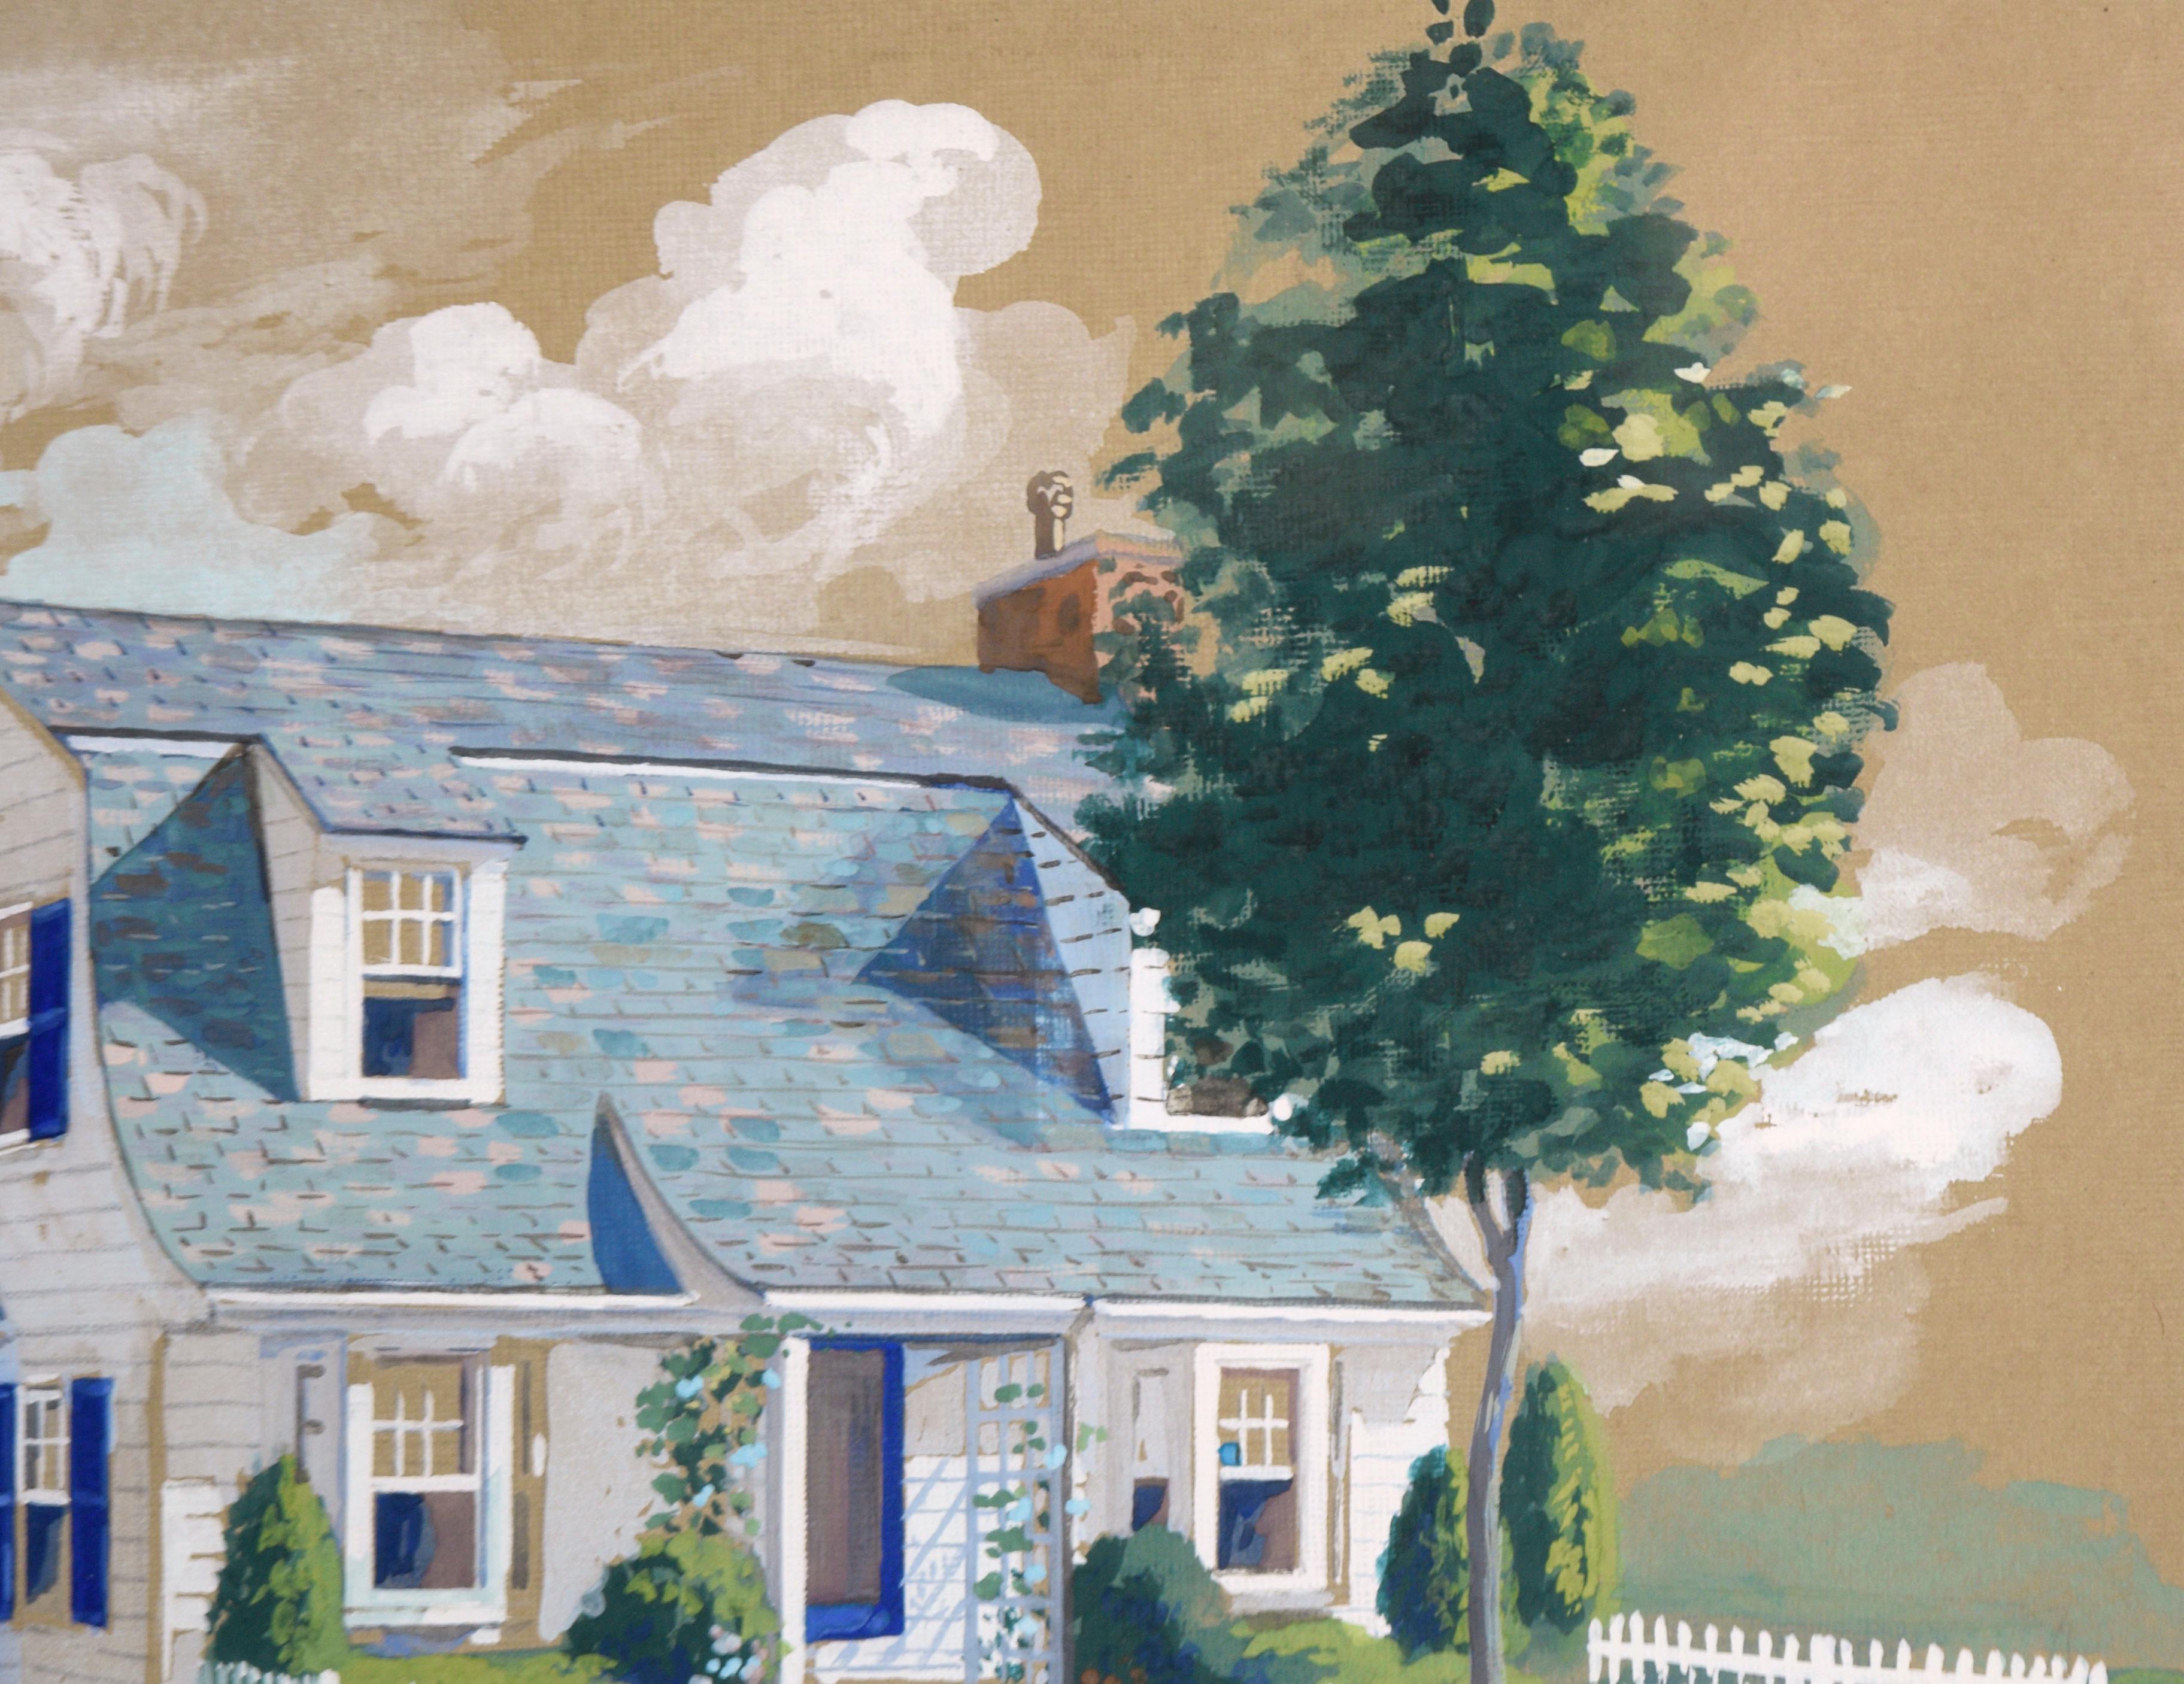 Architektonische Illustration eines Scheunenhauses im Cape Cod-Stil mit Dormers in Gouache

Detaillierte, idyllische Illustration eines zweistöckigen Vorstadthauses von F. Knowles (20. Jahrhundert). Ein Haus mit weißer Fassade, blauen Fensterläden